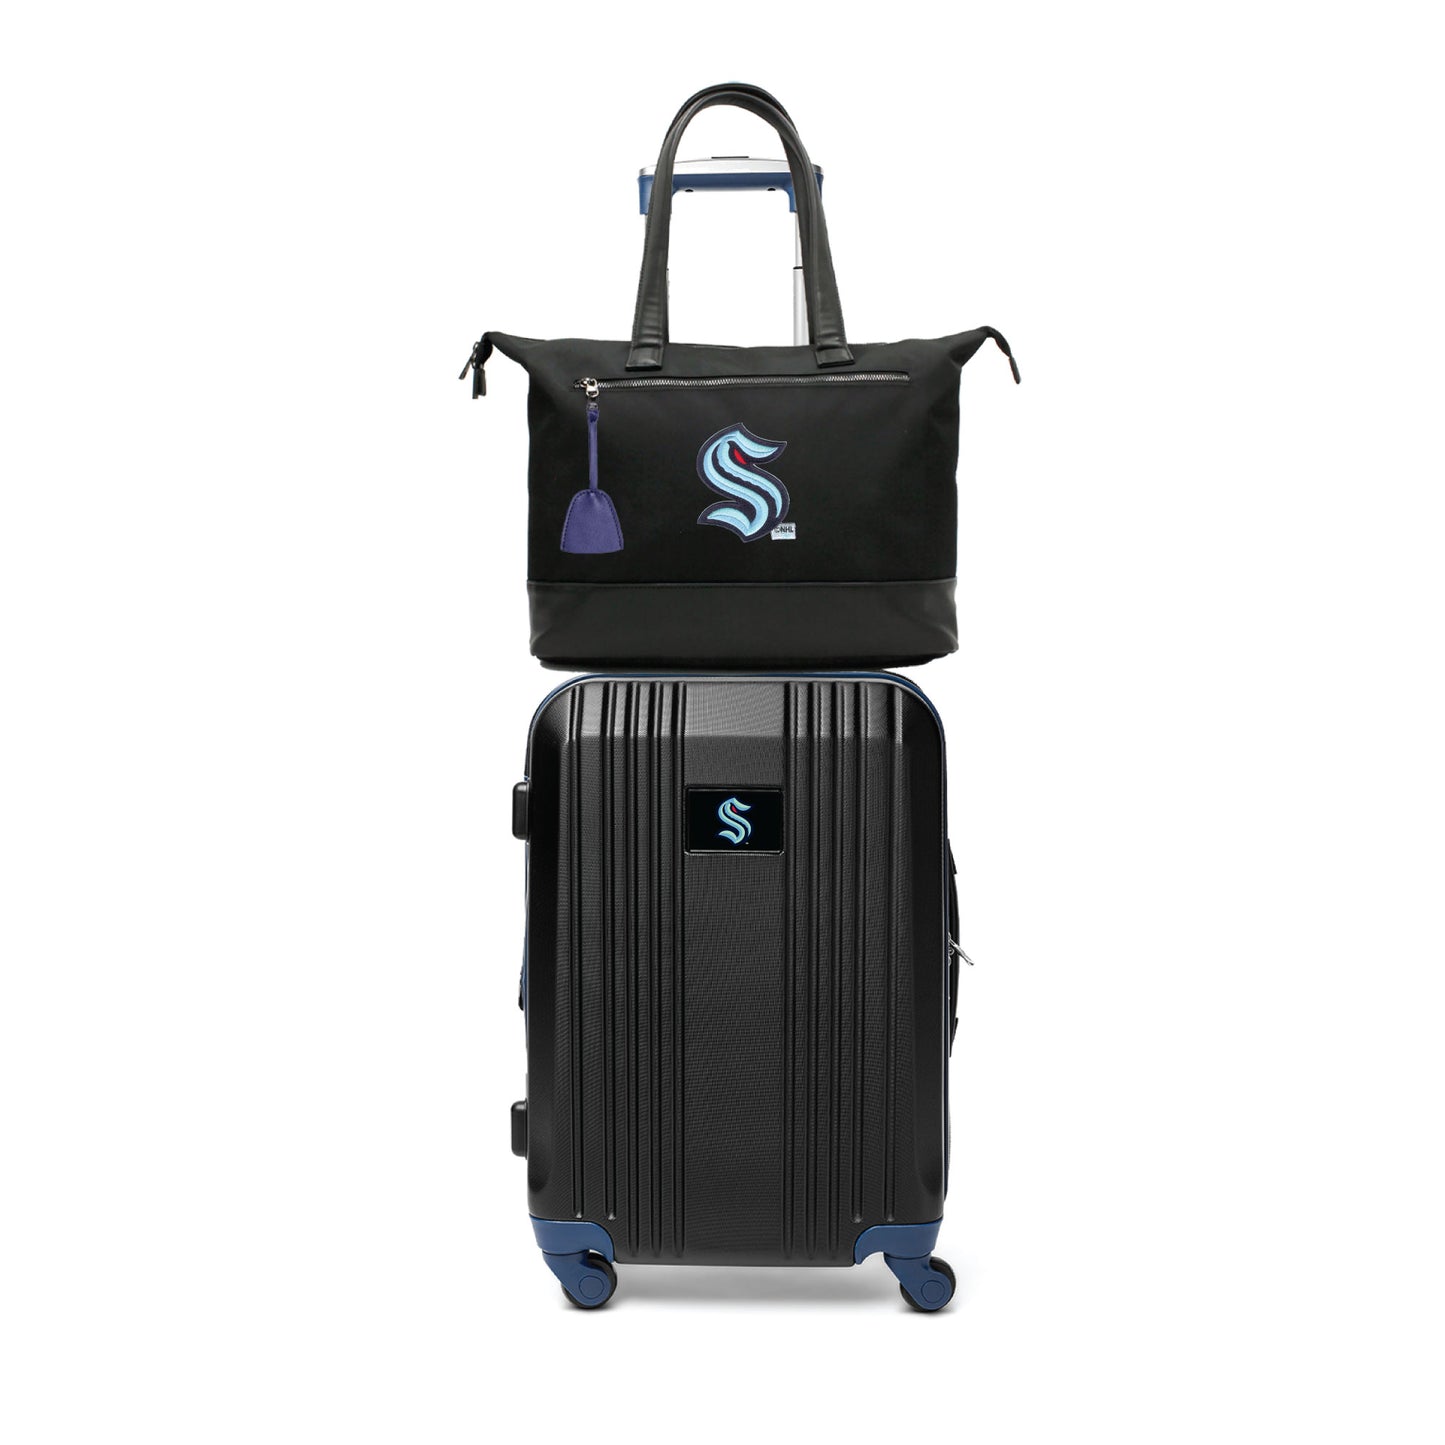 Seattle Kraken Premium Laptop Tote Bag and Luggage Set